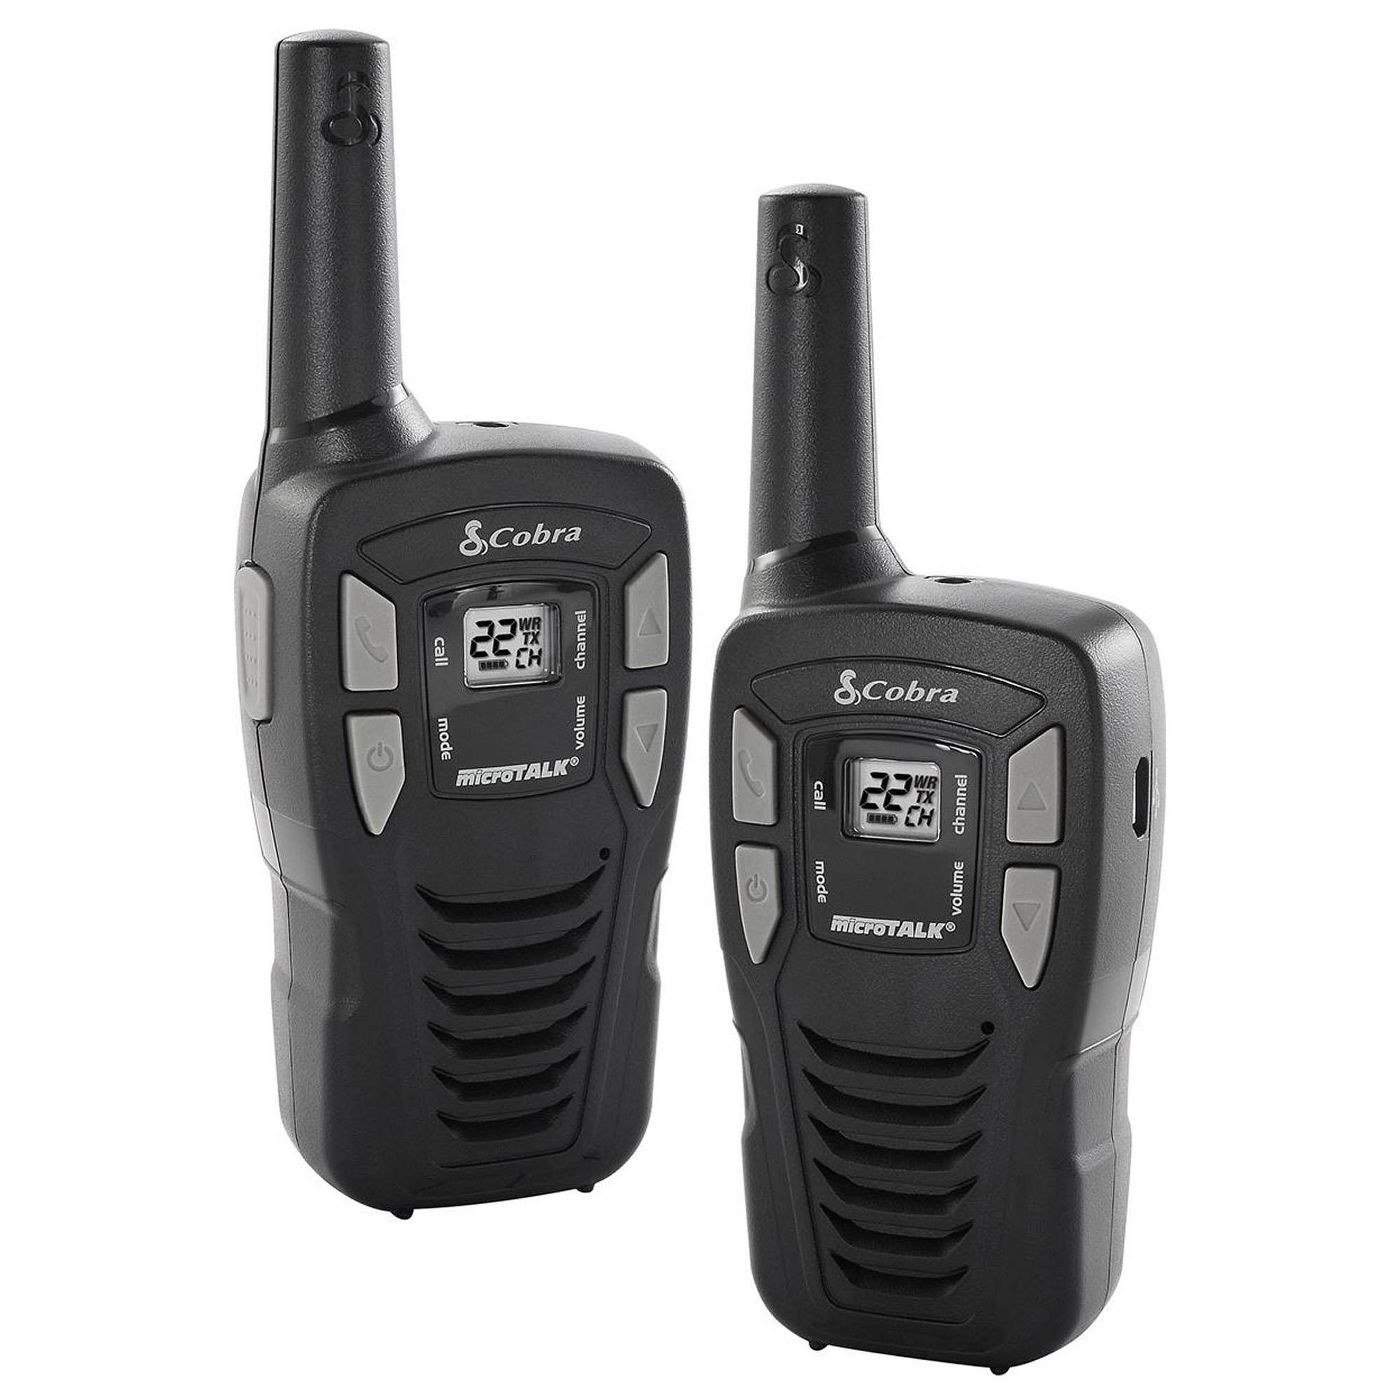 the two walkie talkies in black